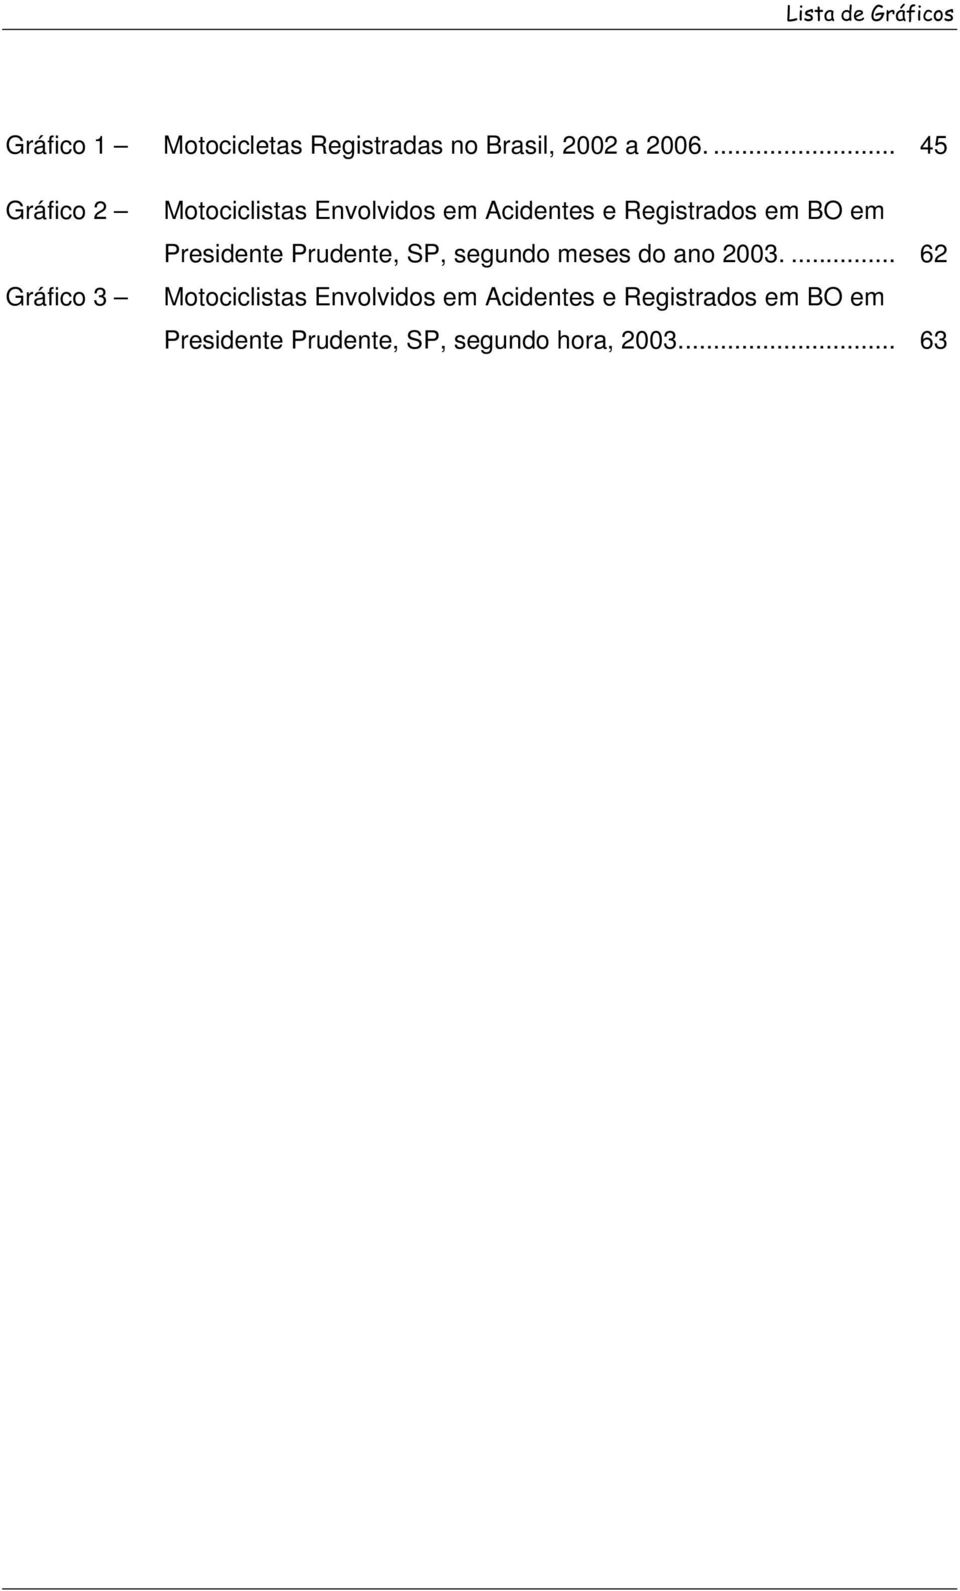 BO em Presidente Prudente, SP, segundo meses do ano 2003.